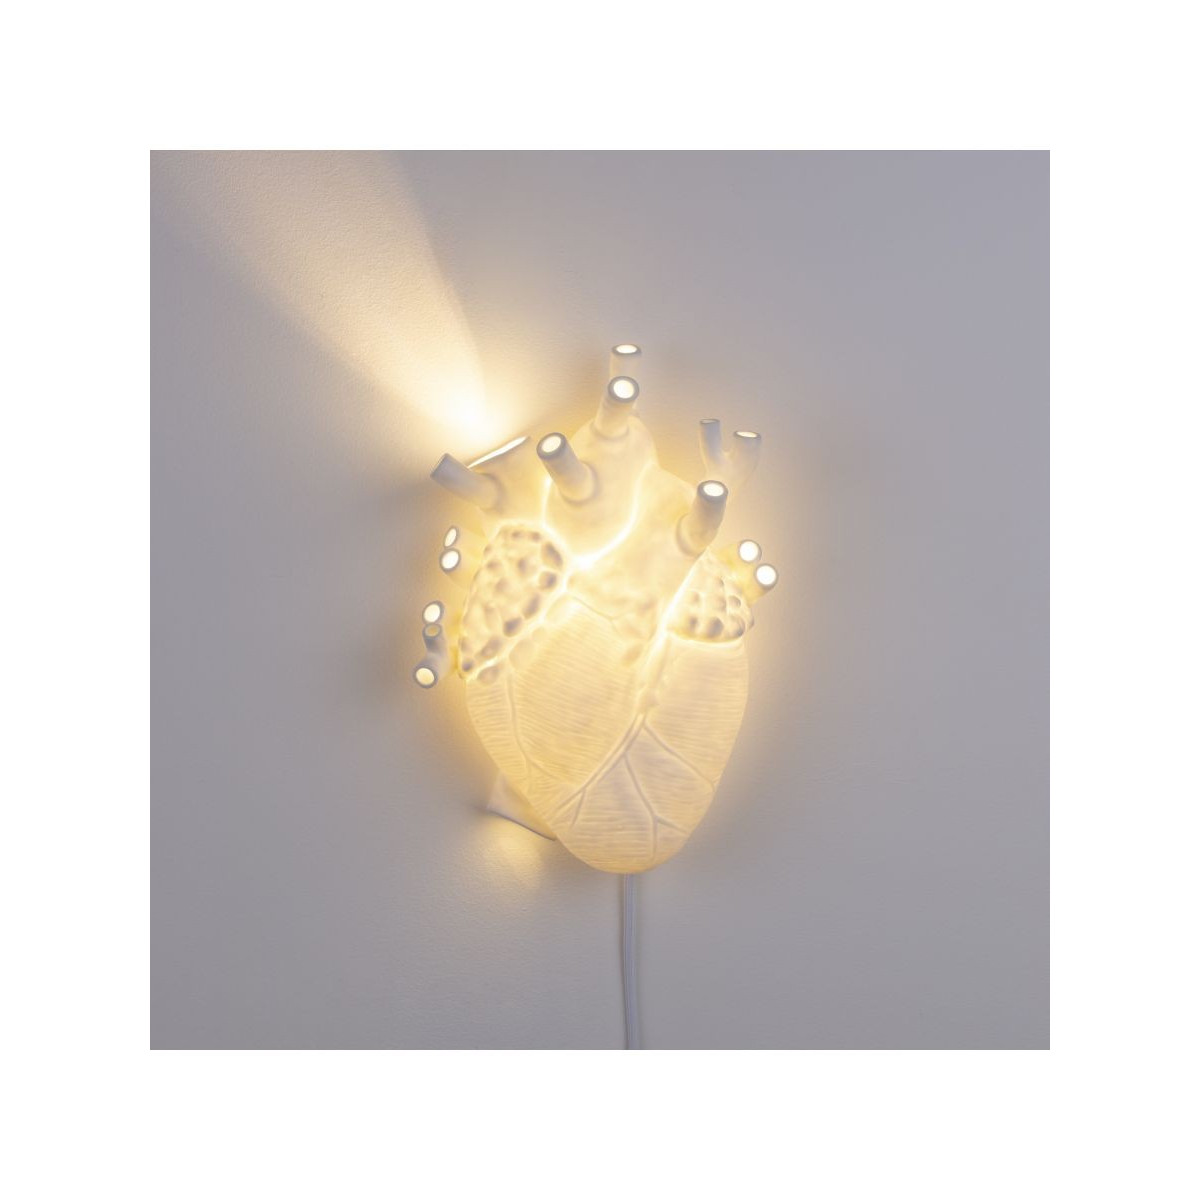 Lampe coeur (heart lamp)